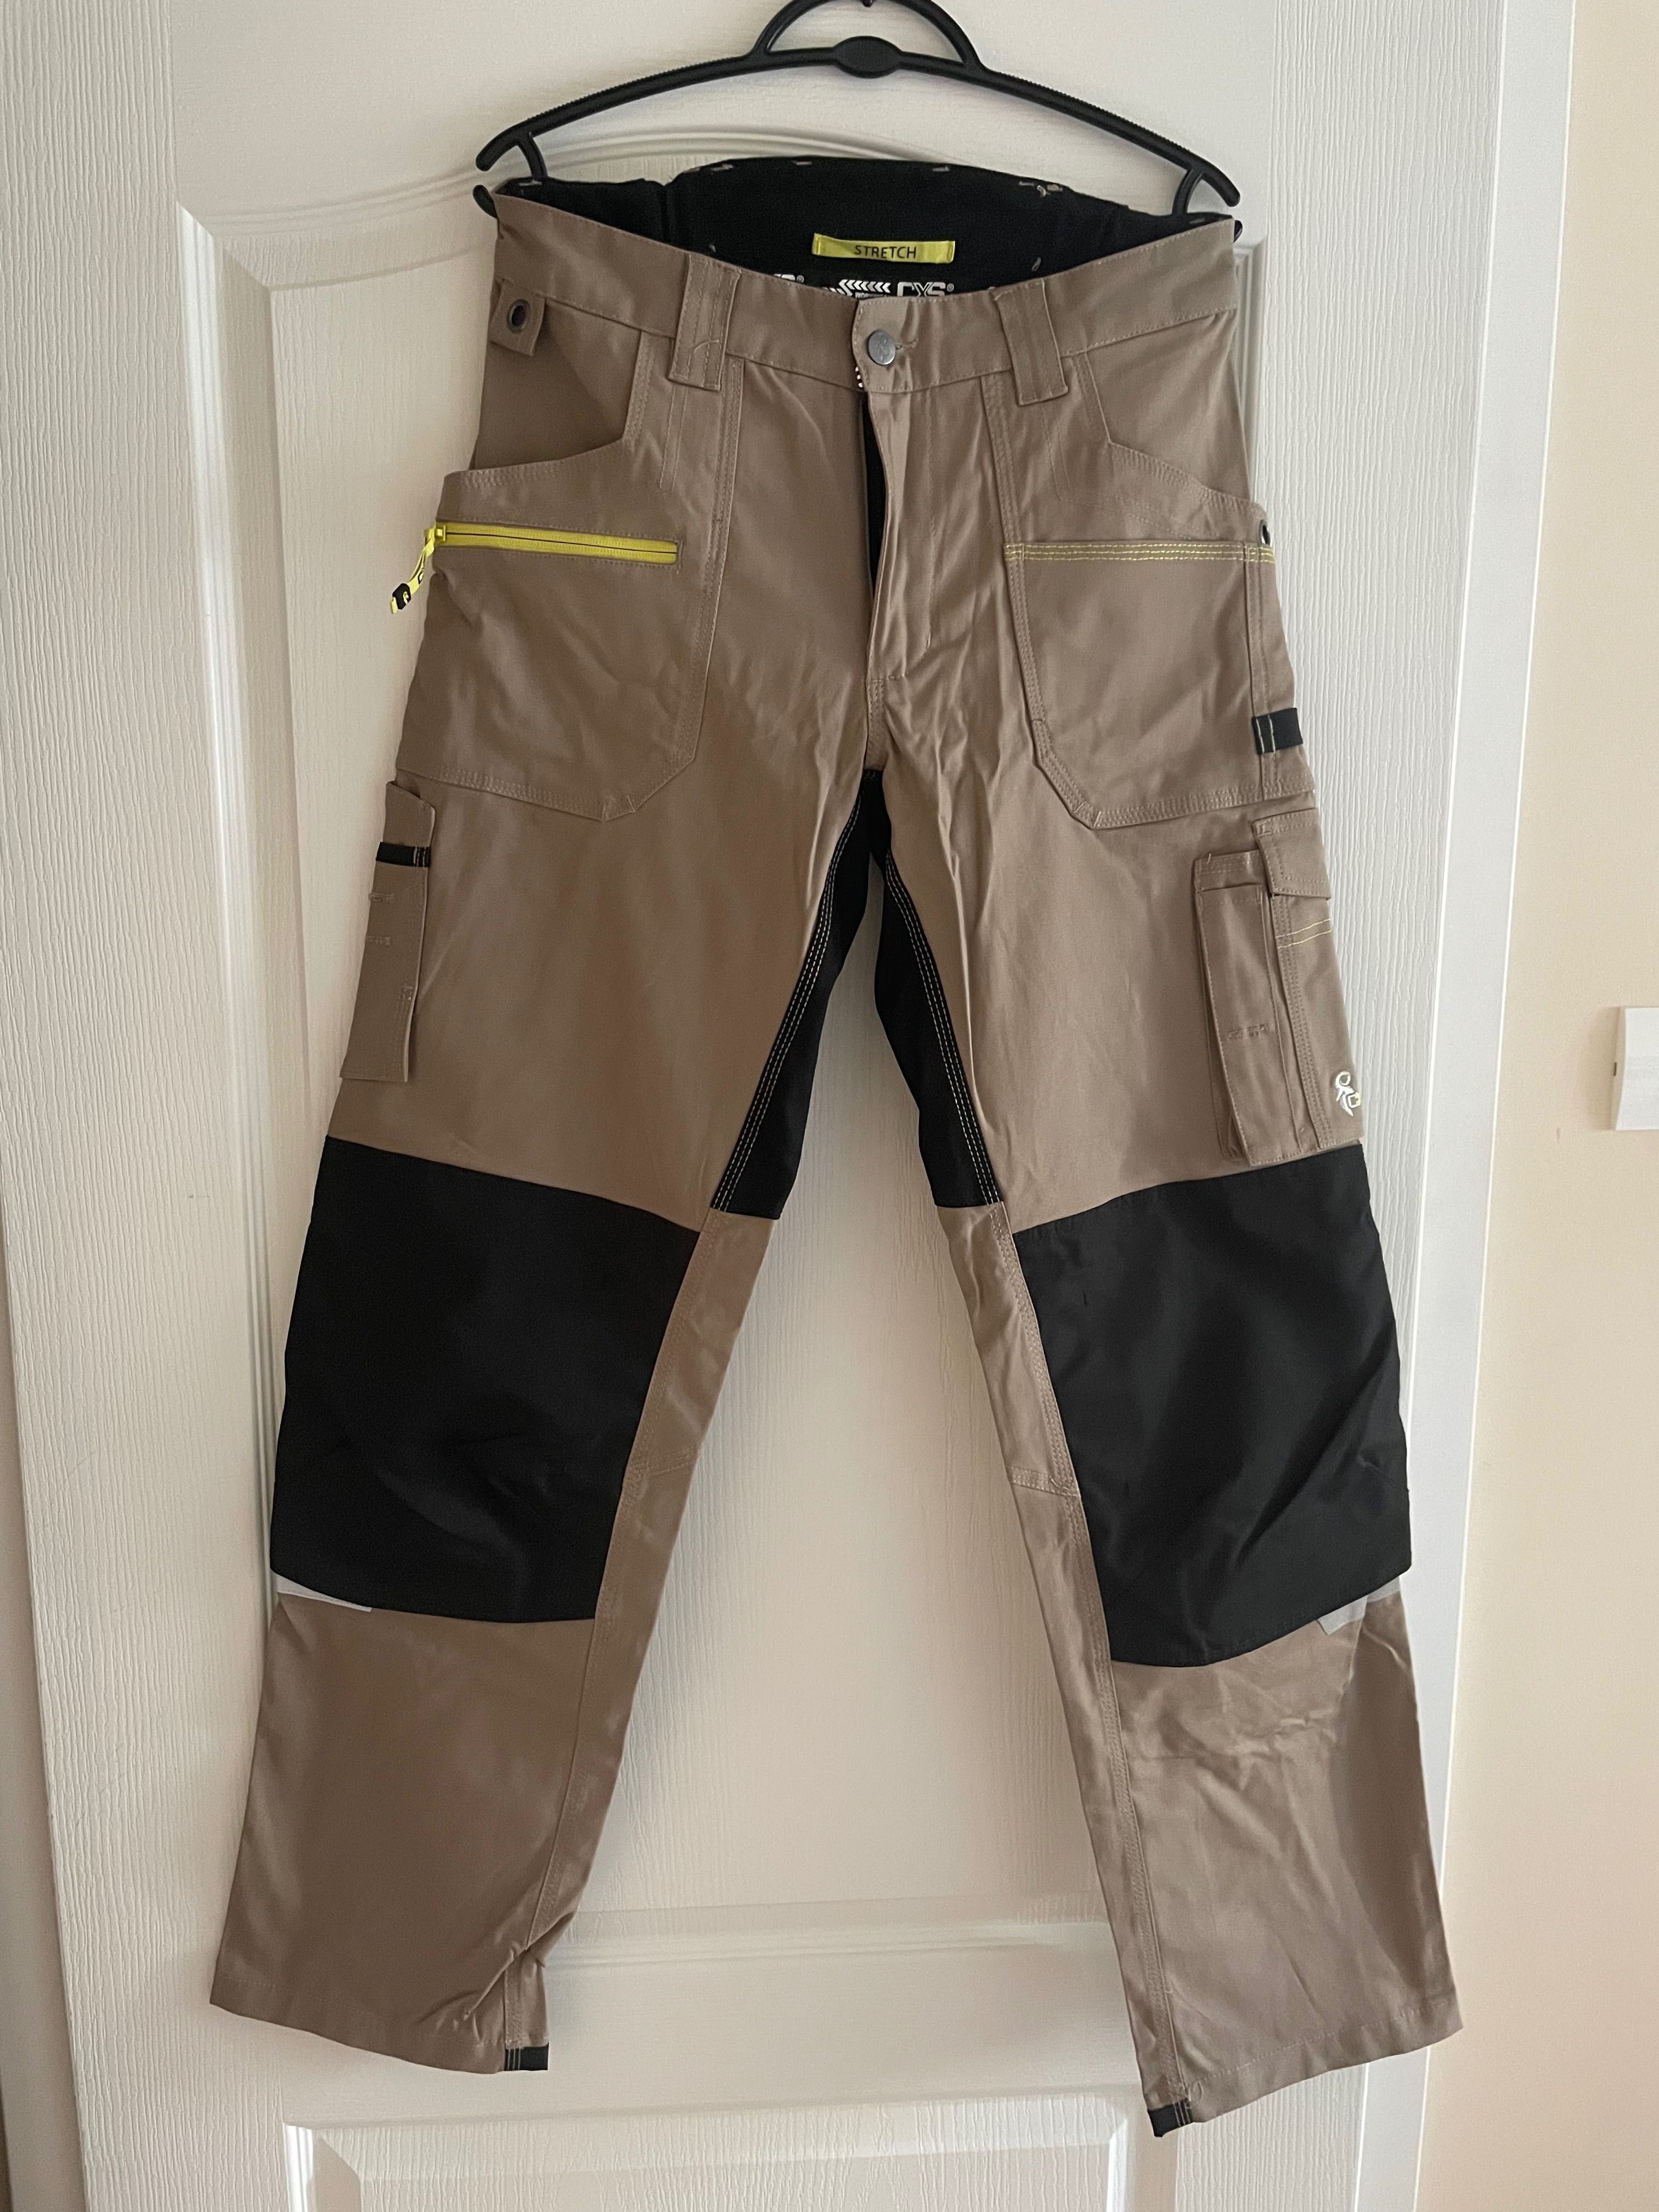 Pantaloni workwear (de munca/protectie) marimea 46, CXS, bej